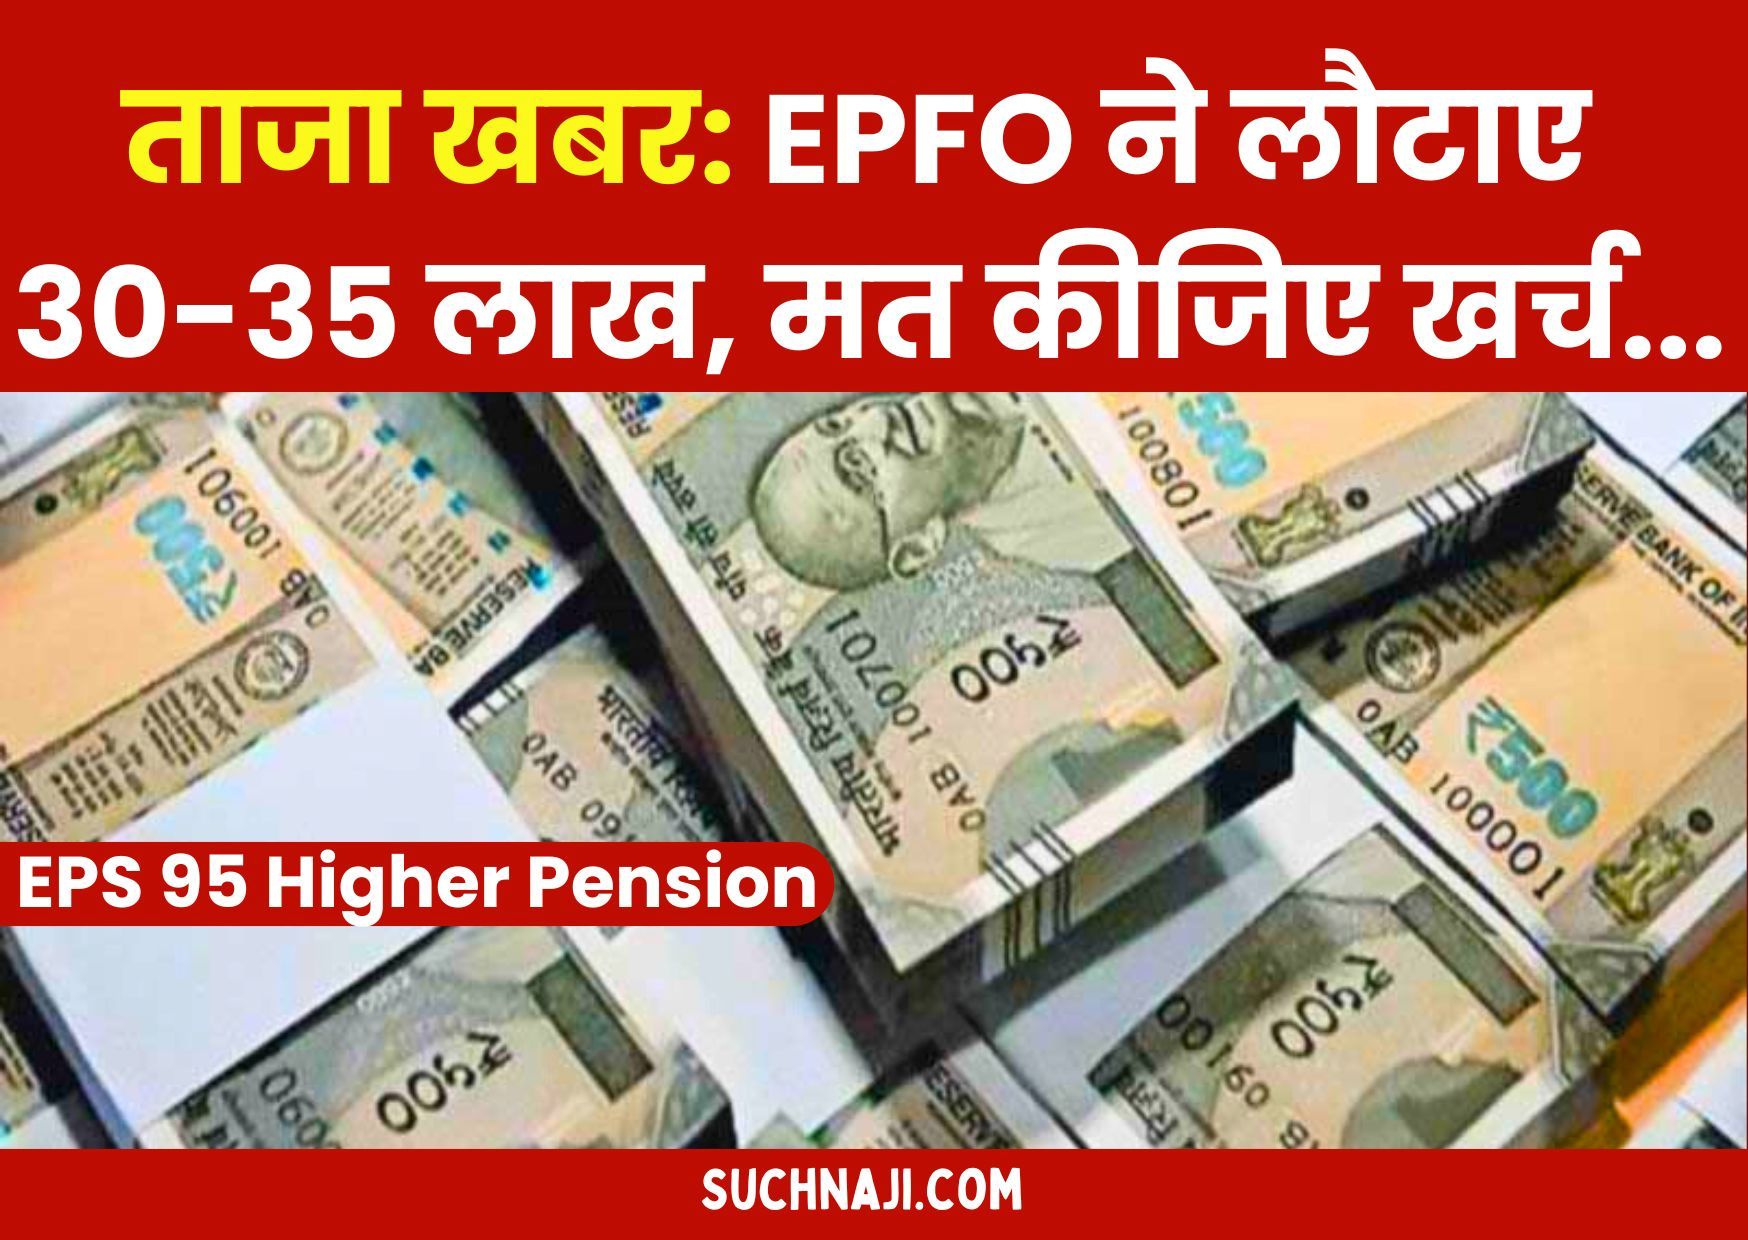 EPS 95 Higher Pension: EPFO ने लौटाया है 30-35 लाख, मत कीजिए खर्च, आ रही ताजा खबर